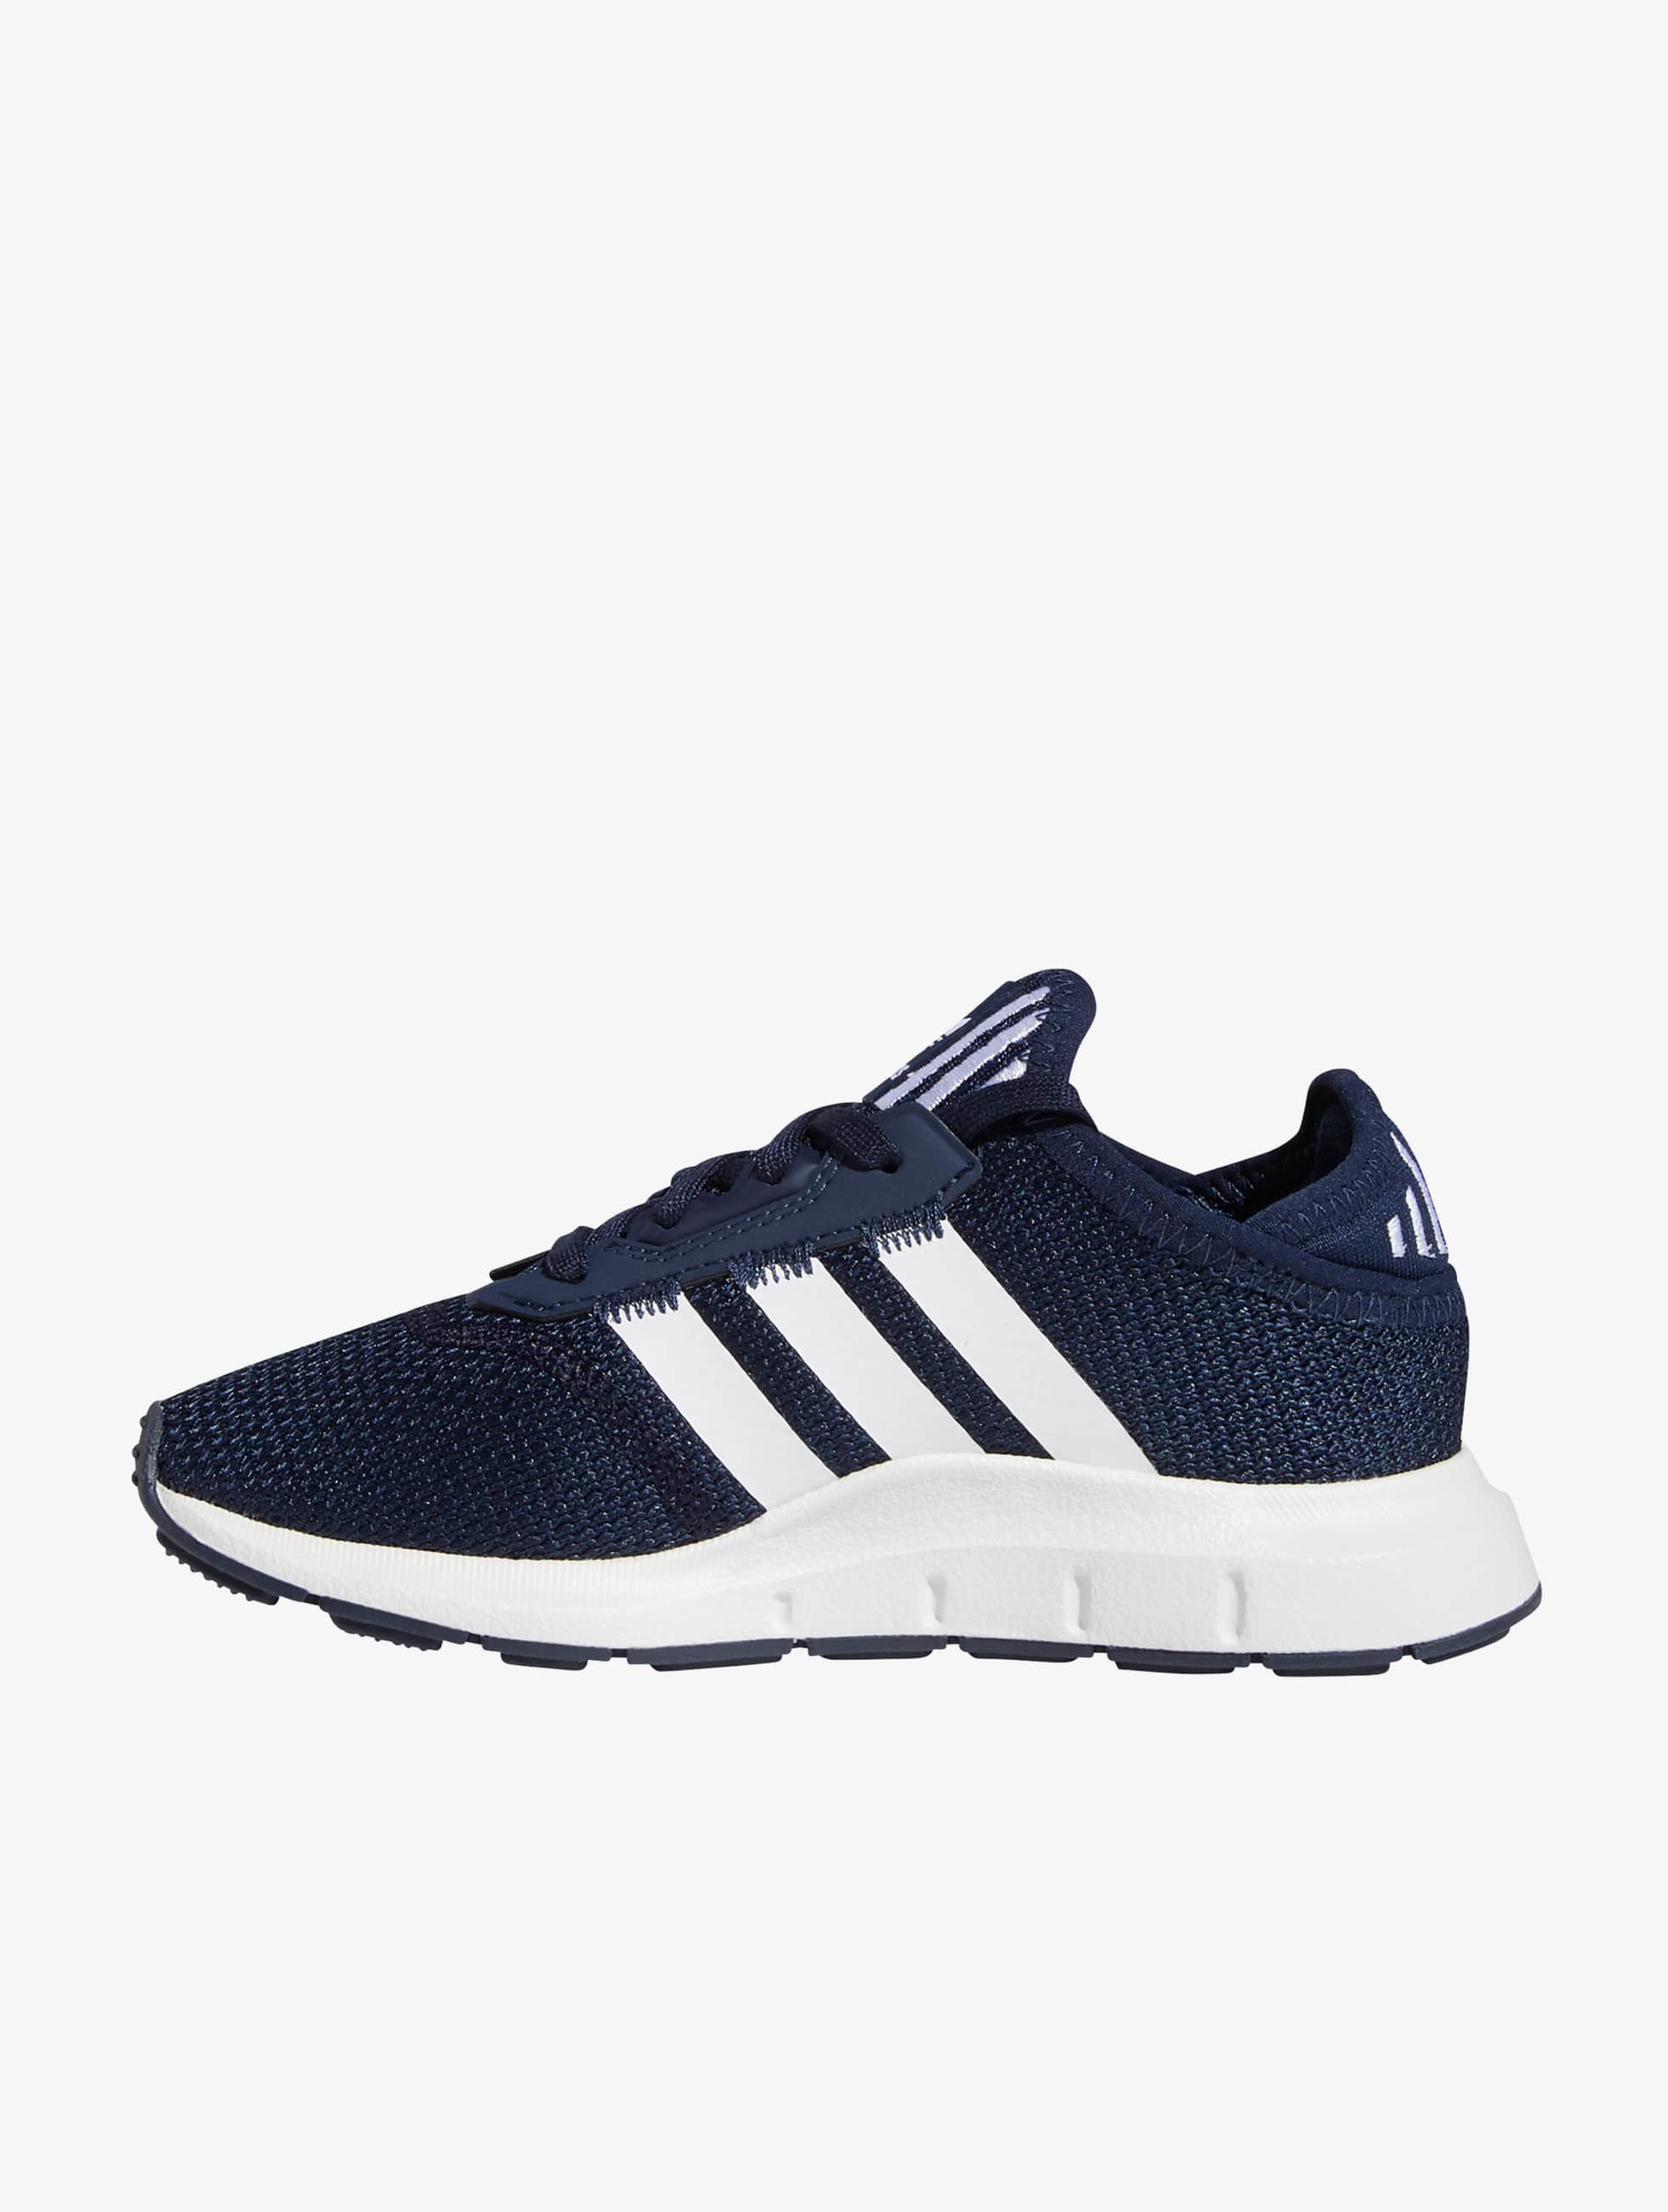 Wissen vezel Zeeman adidas Originals schoen / sneaker Swift Run X C in blauw 846307